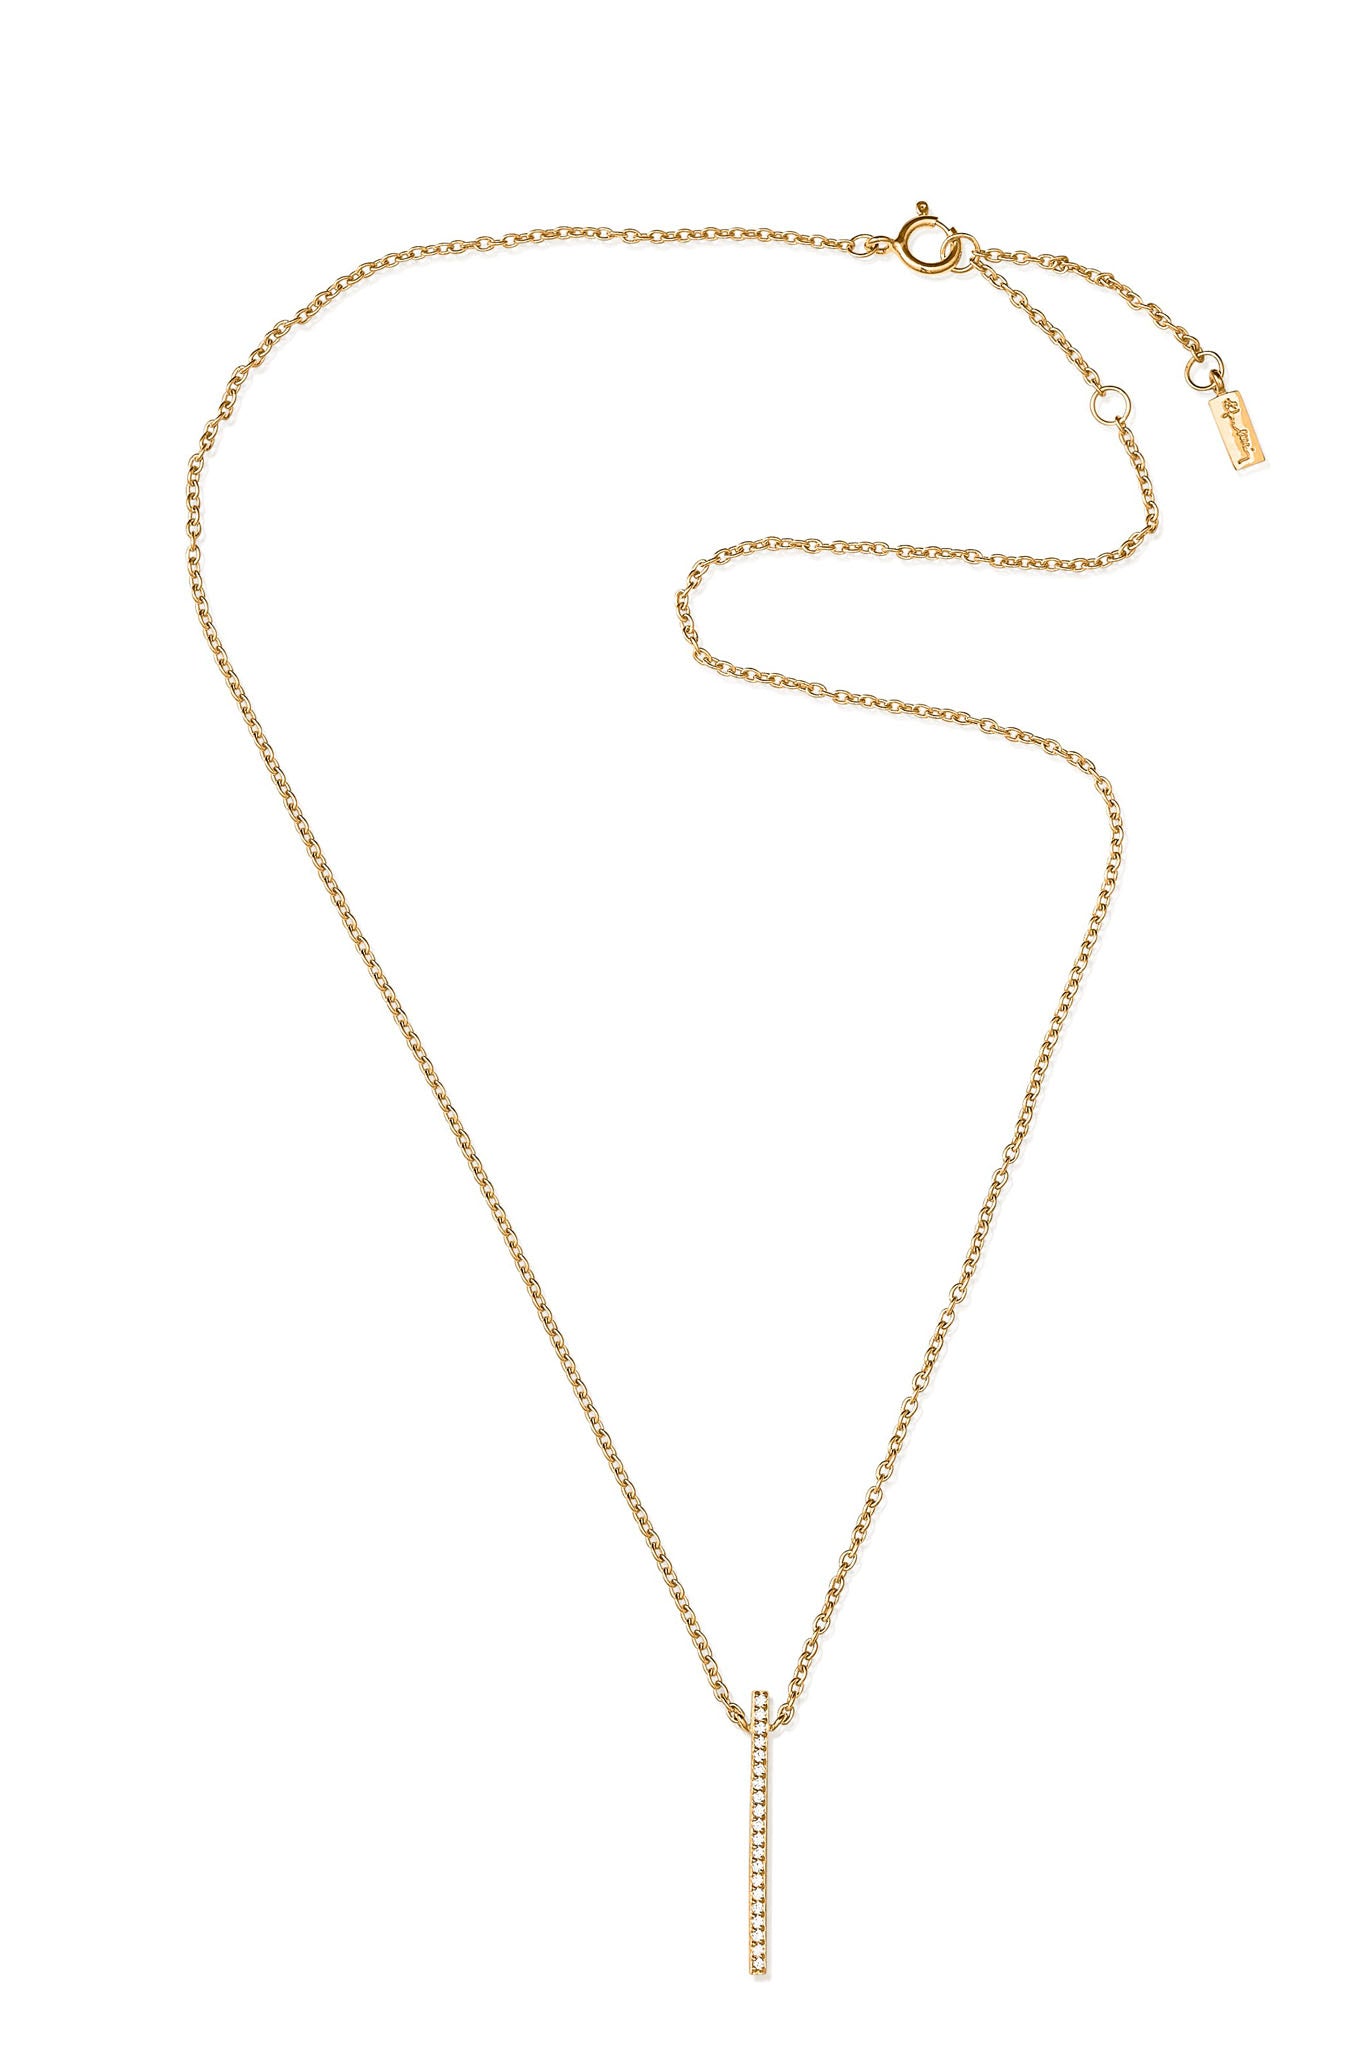 Efva Attling Starline Necklace kultainen kaulakoru Säädettävä:40/45cm